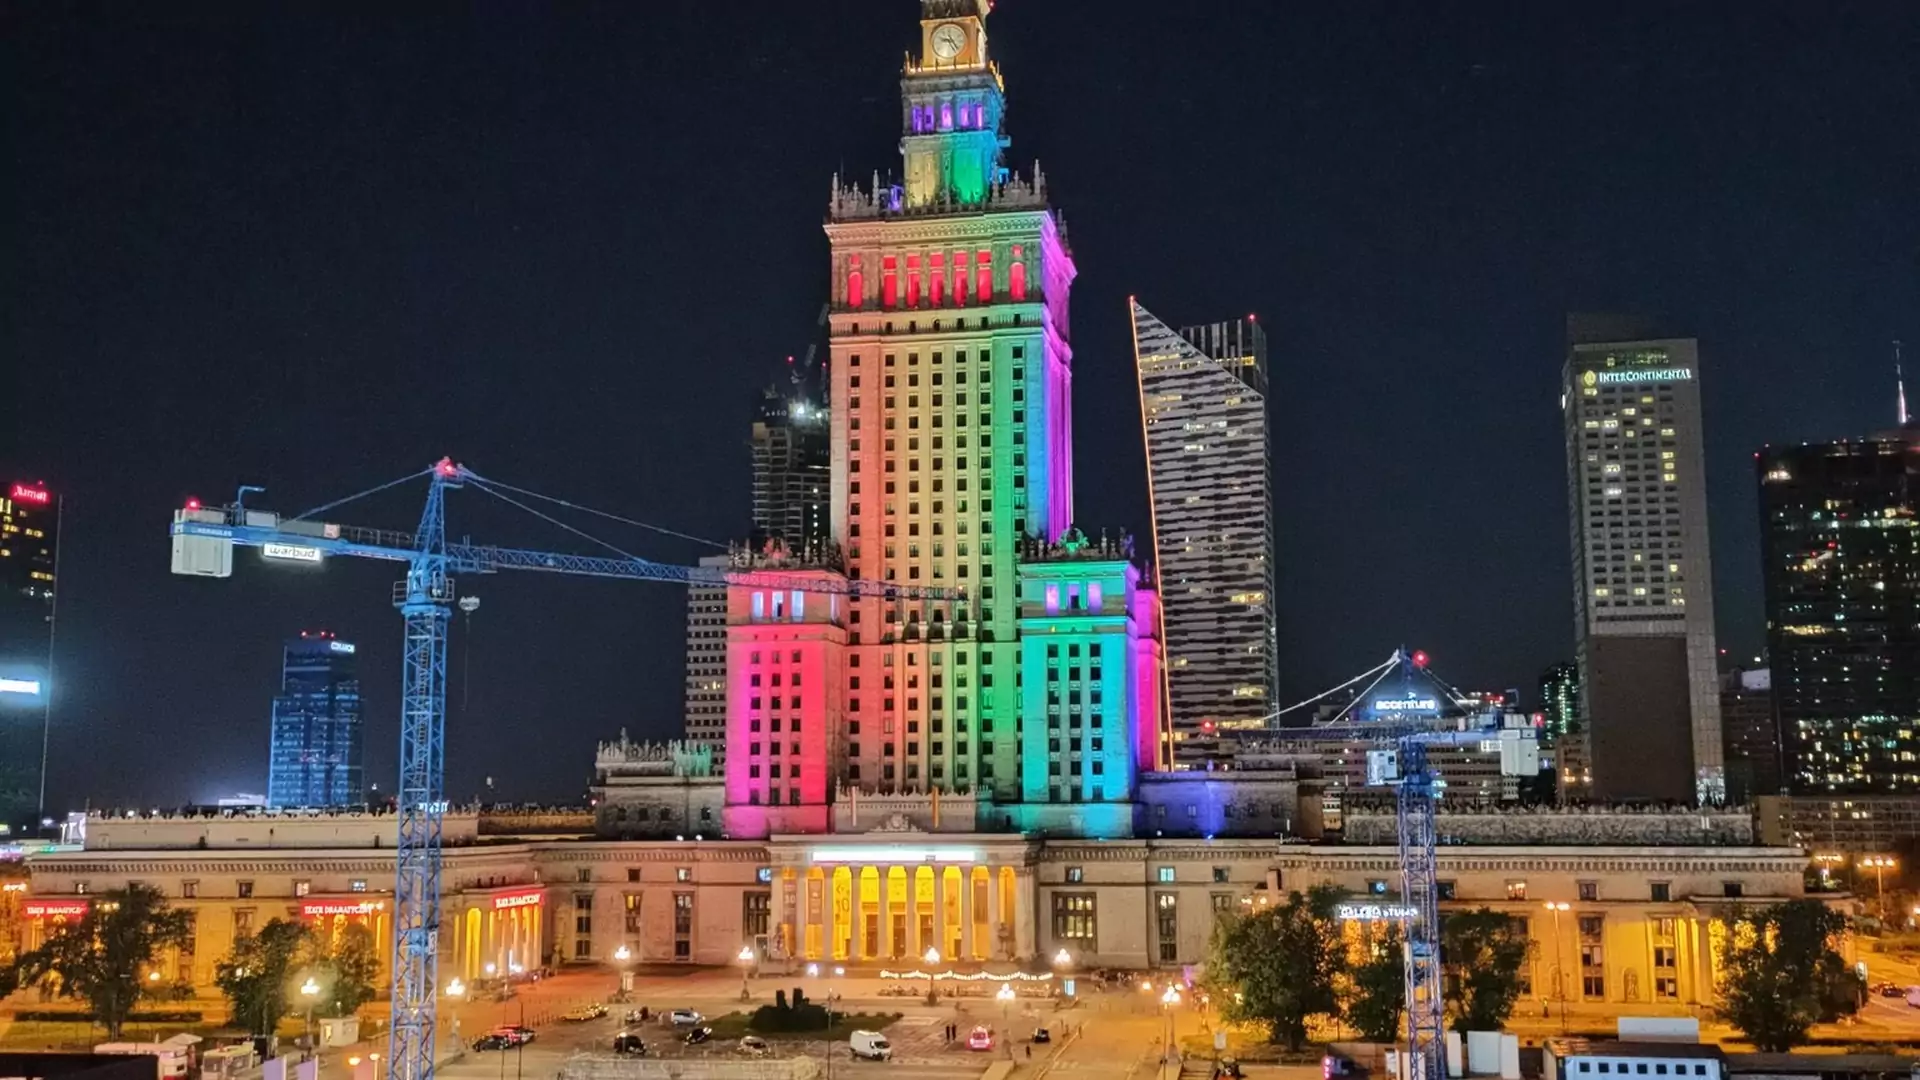 Pałac Kultury i Nauki w kolorach tęczy na znak solidarności stolicy ze społecznością LGBT+